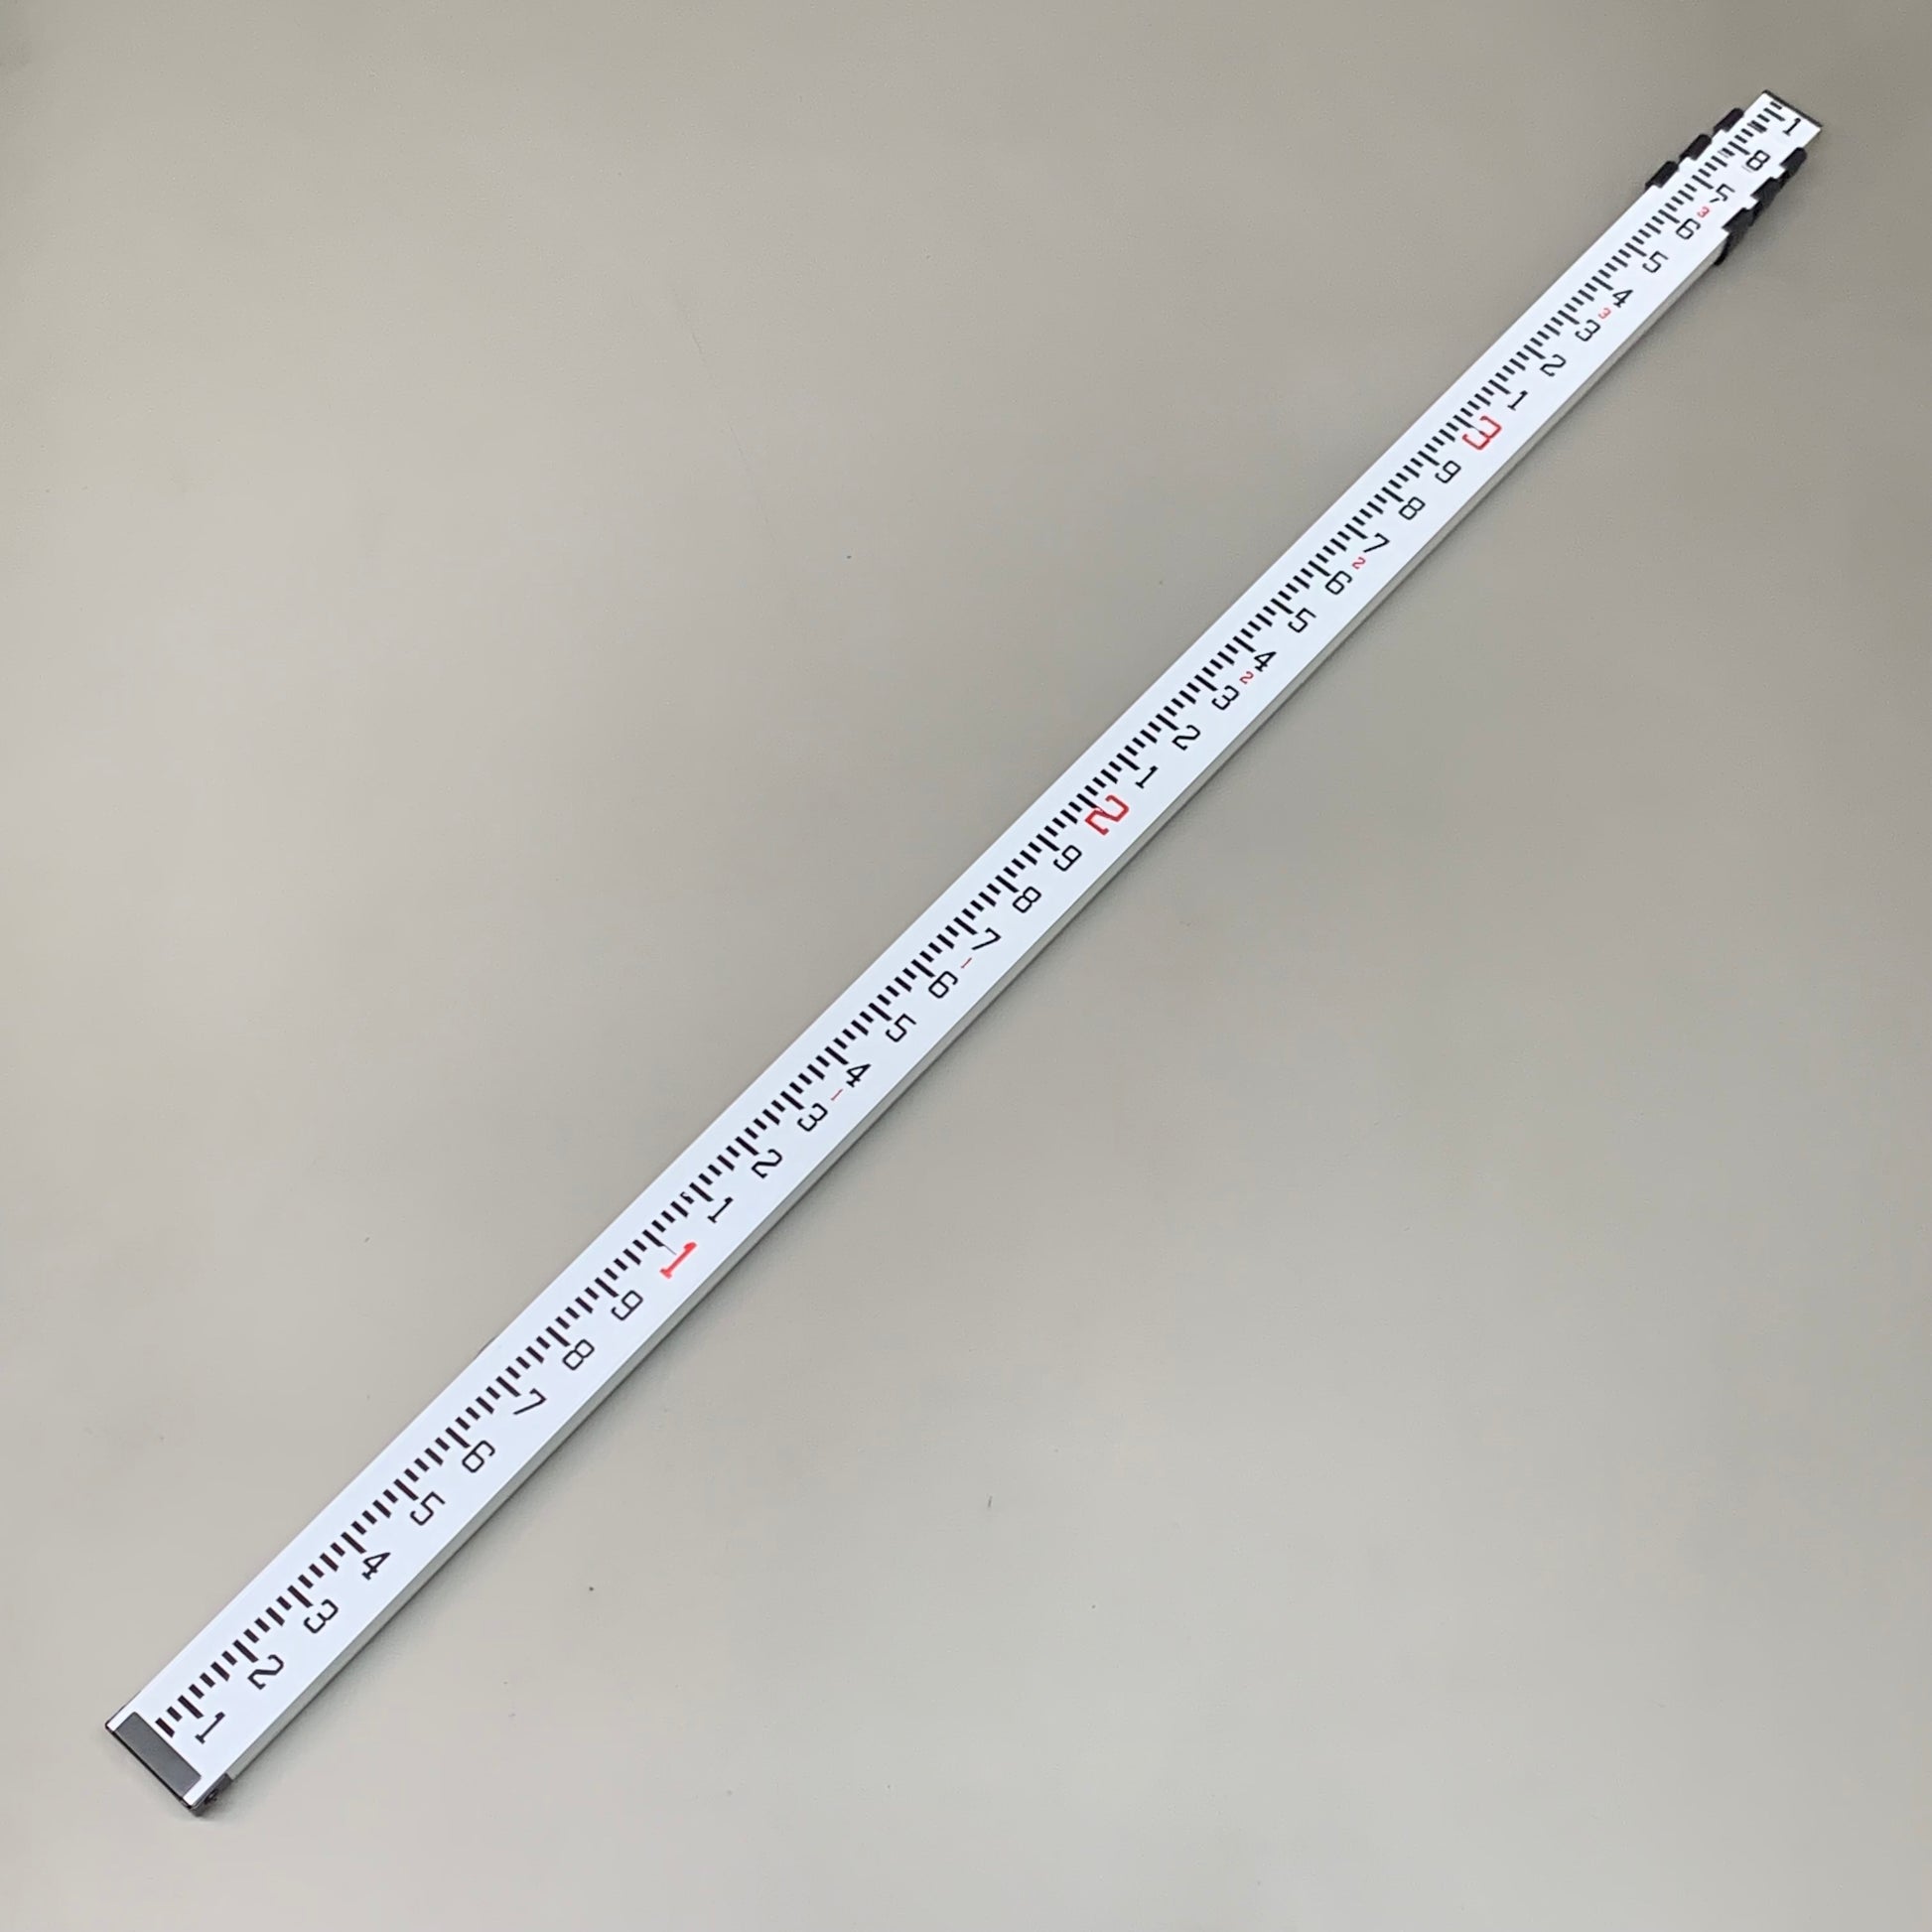 CST/berger 06-813 Leveling Rod, Aluminum, 13 ft